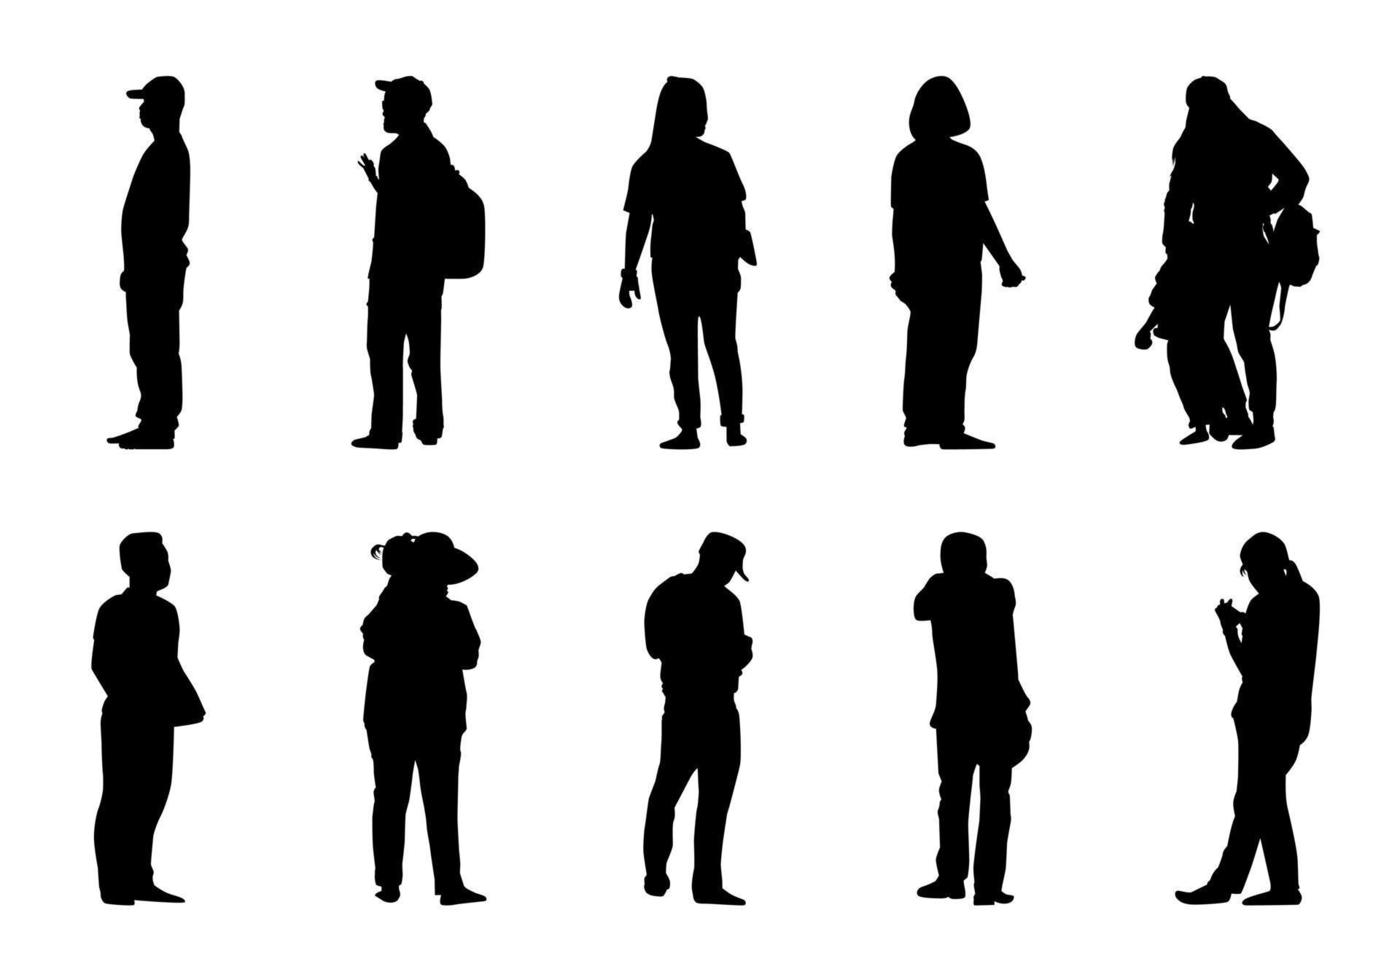 silueta de personas sobre fondo blanco, conjunto de vectores de hombres y mujeres de estilo de vida, sombrear diferentes ilustraciones humanas